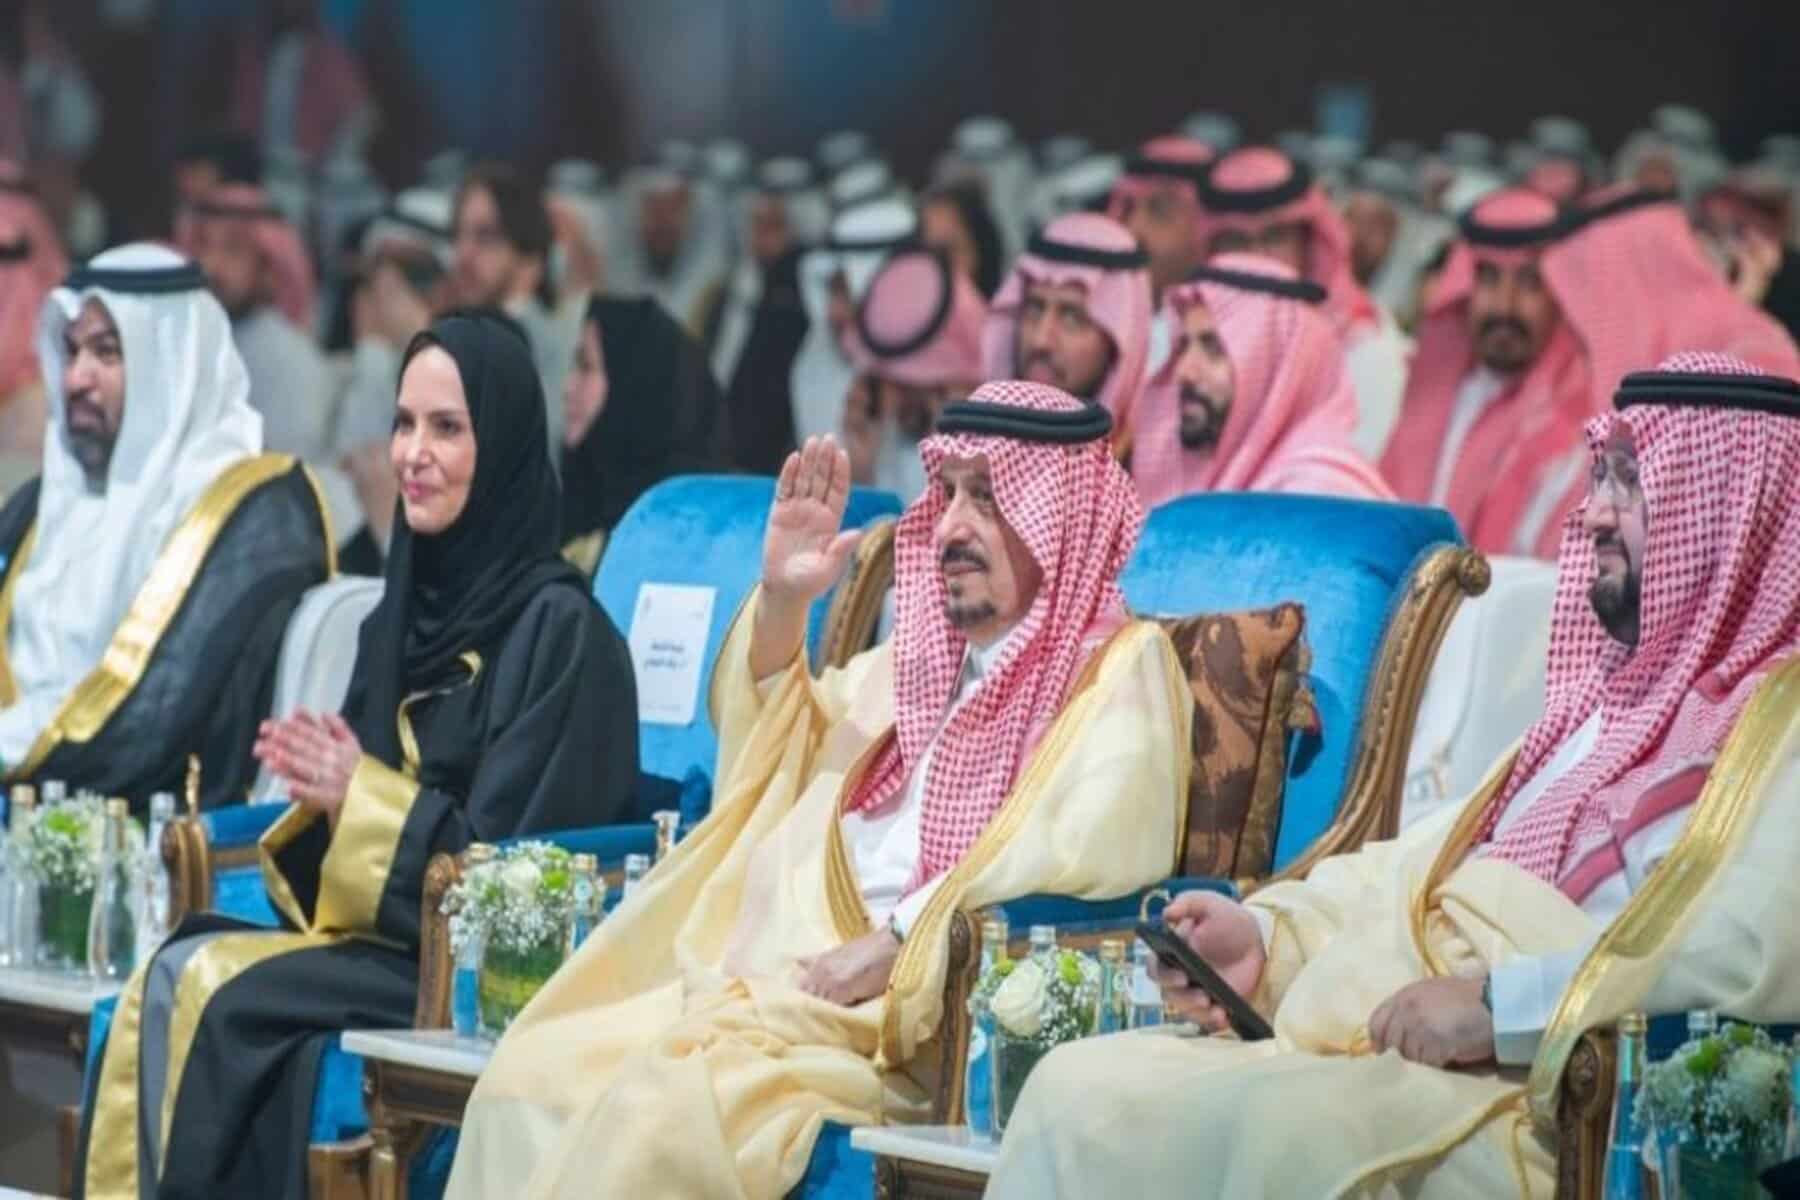  alarabtrend.com رقص مختلط في الرياض يثير الضجة